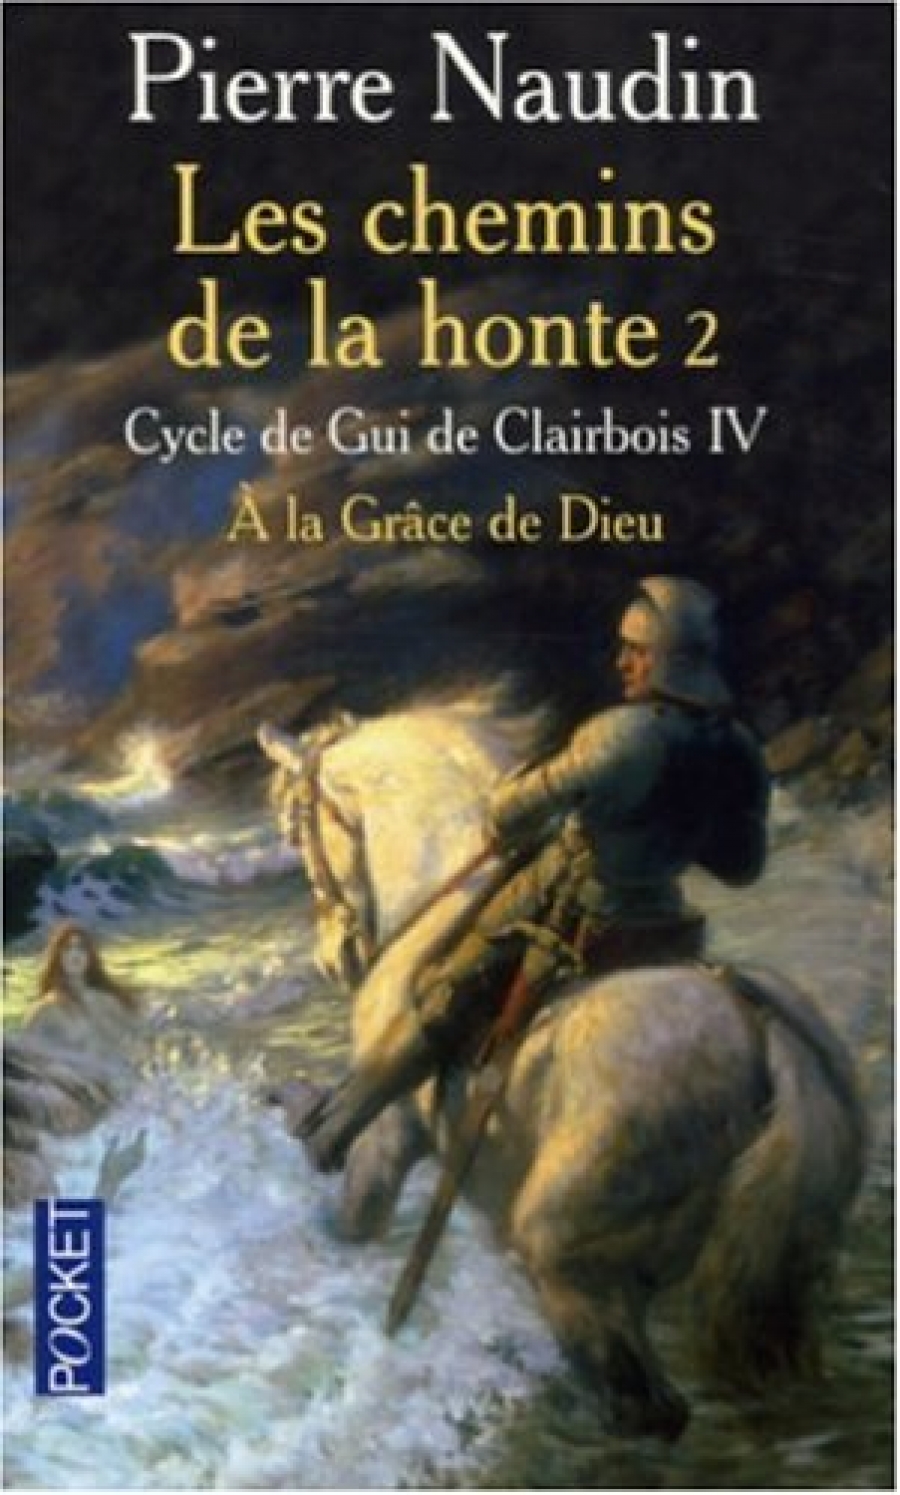 Naudin, Pierre Cycle de Gui de Clairbois.Les chemins de la honte 